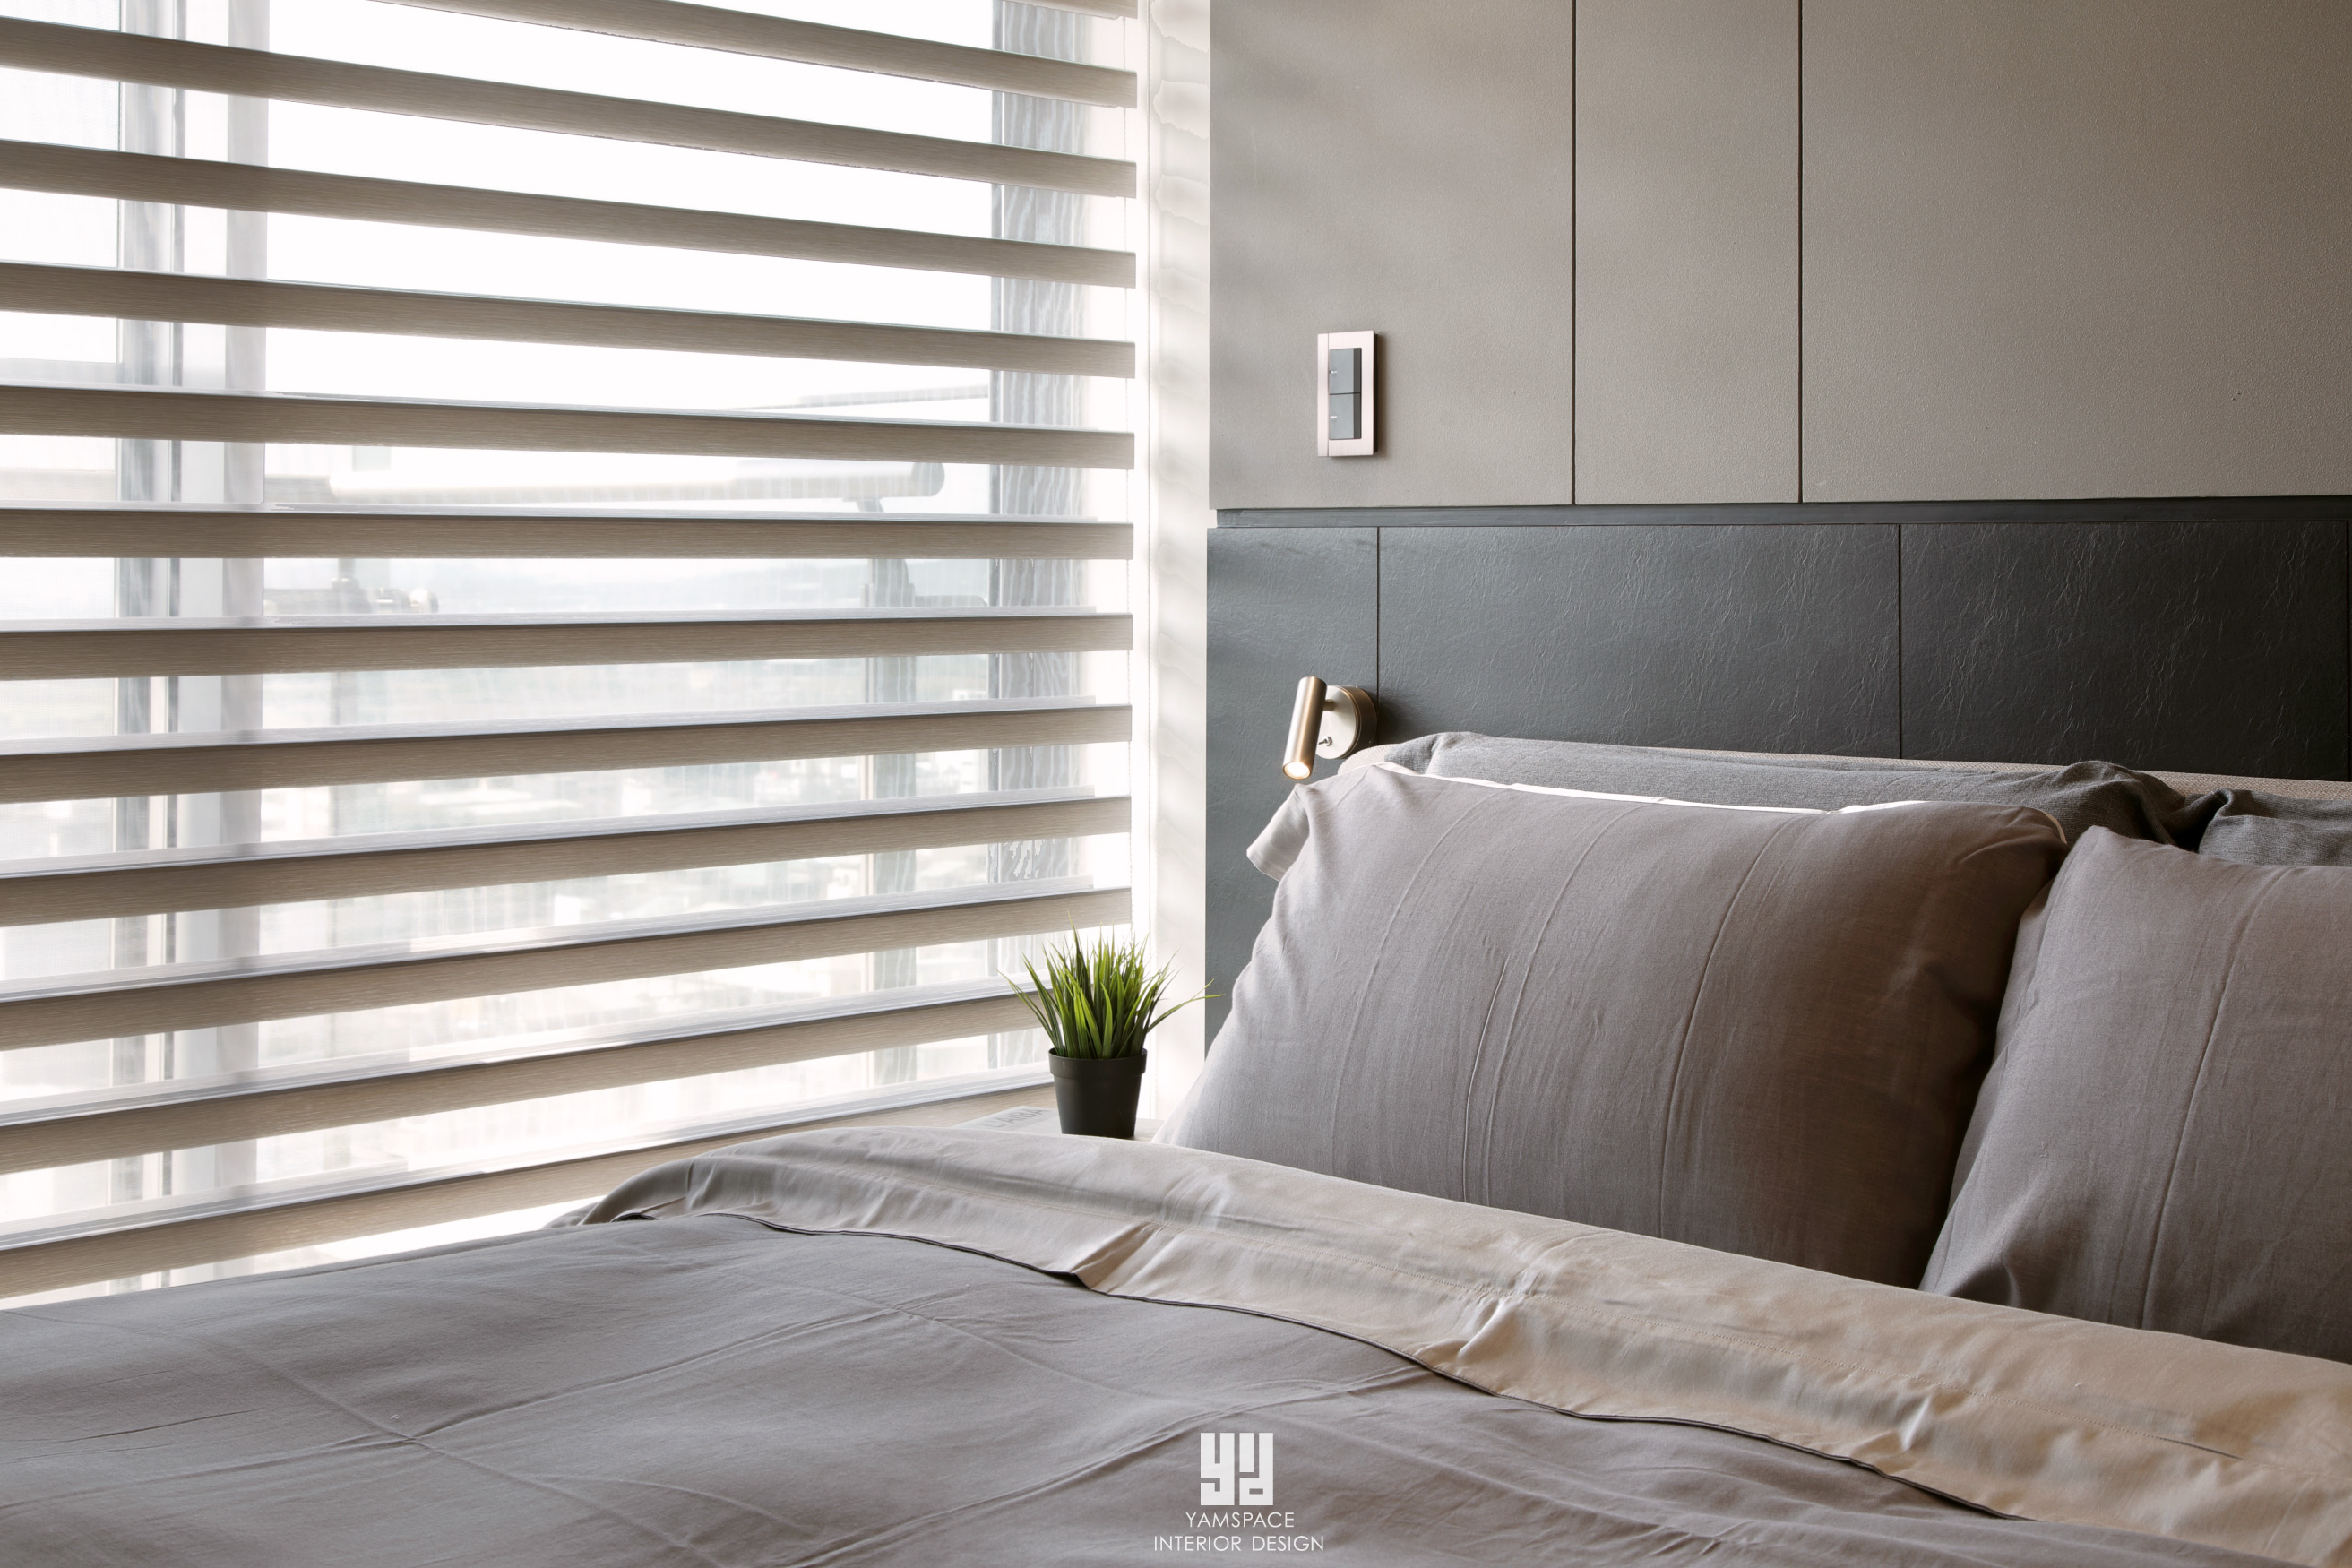 可調整式窗簾讓陽光照入臥室-台中室內設計推薦